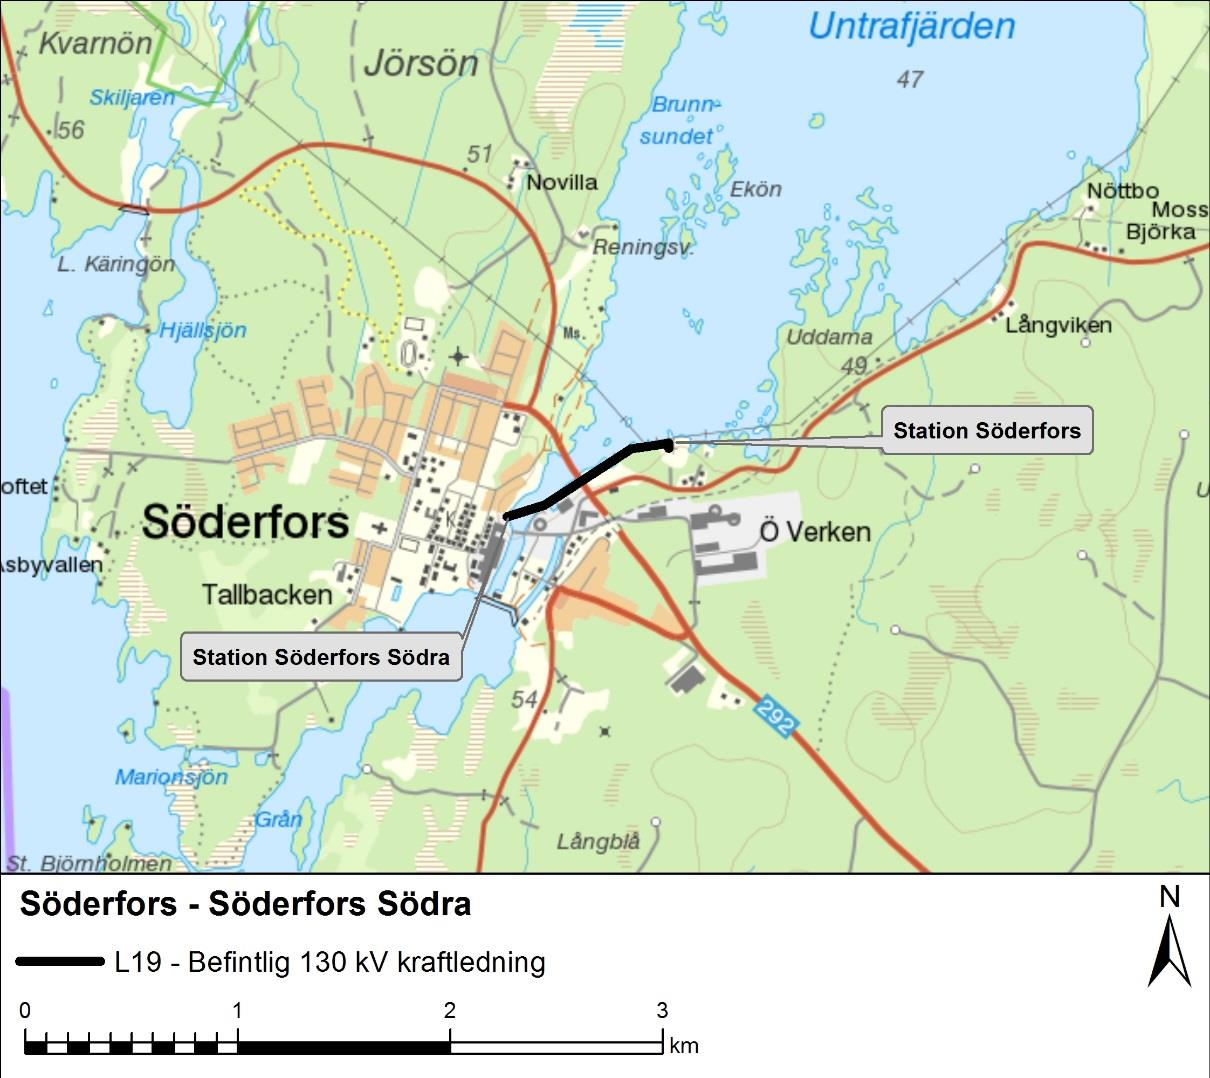 1 Inledning och bakgrund Ellevio planerar att ansöka om förnyat tillstånd, nätkoncession för linje, för en befintlig 130 kv kraftledning mellan Söderfors och Söderfors Södra.